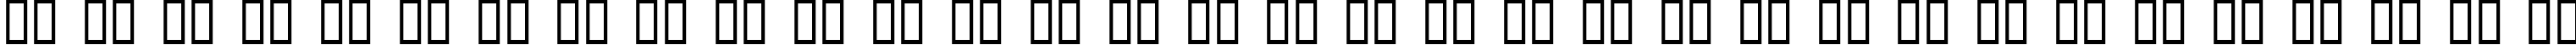 Пример написания русского алфавита шрифтом BDStereotype